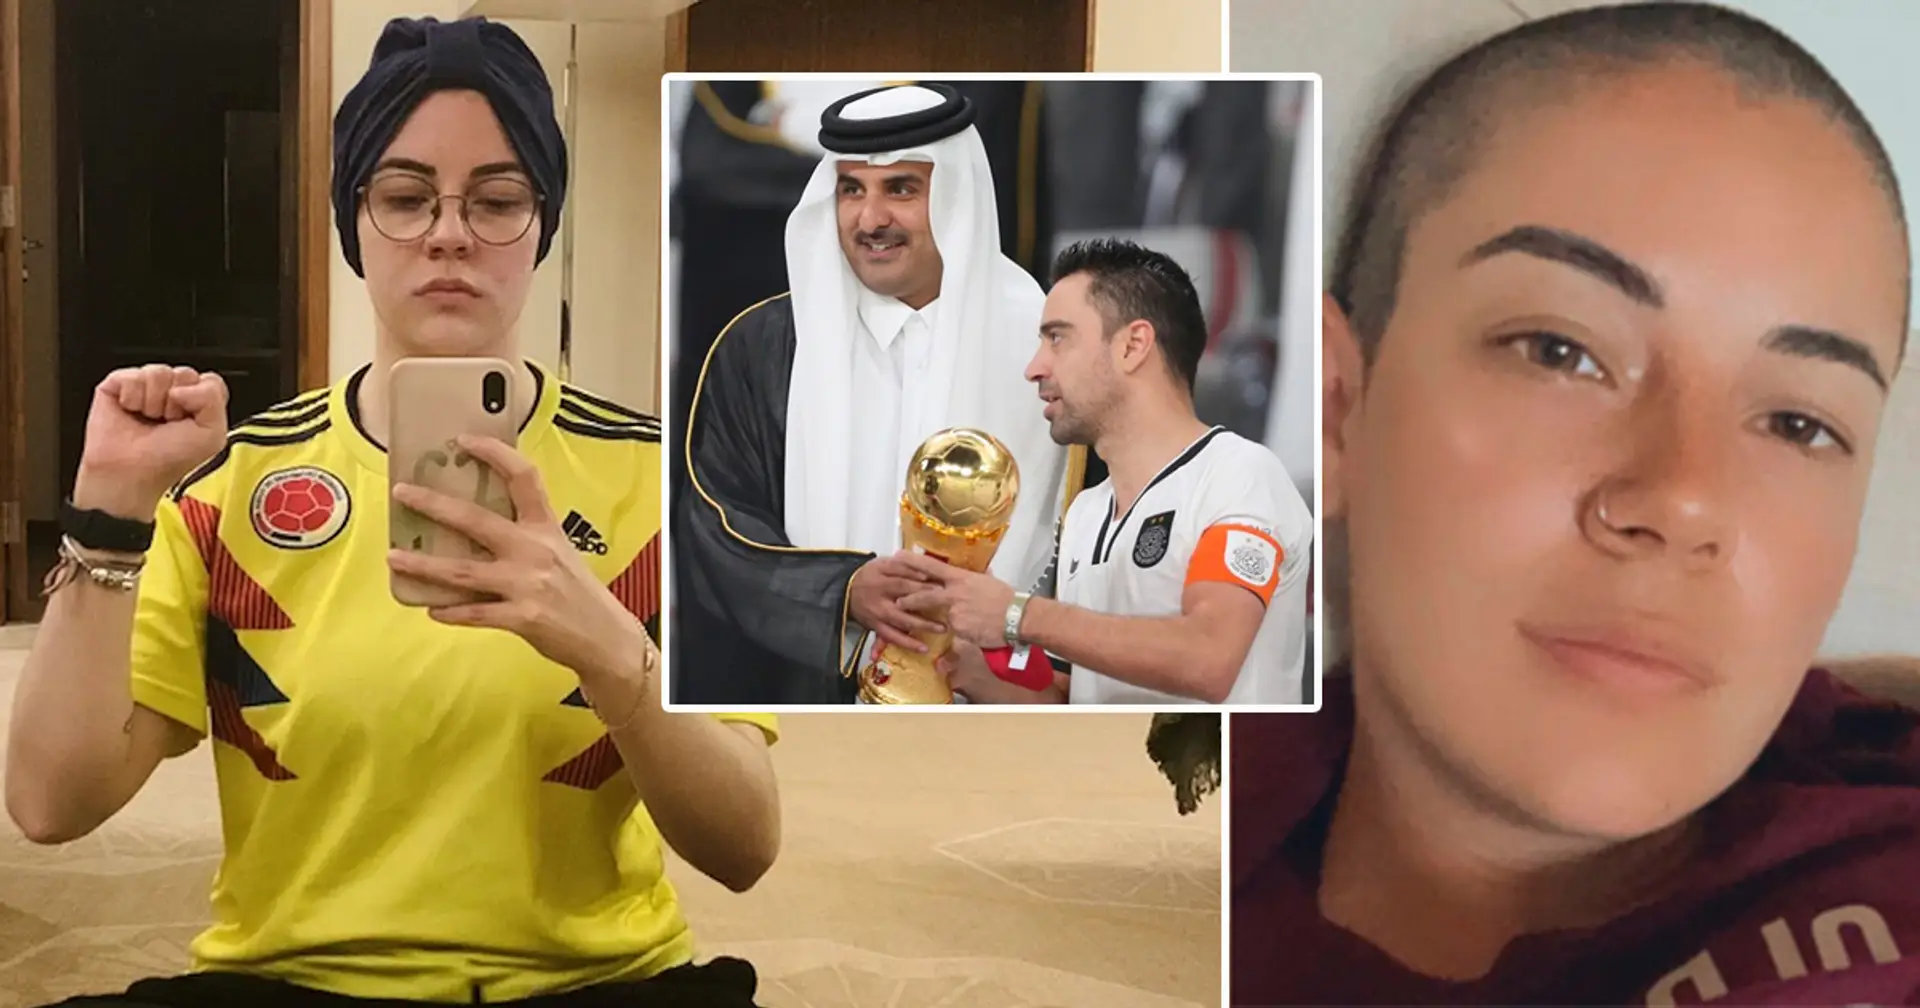 Donna messicana denuncia abusi sessuali in Qatar: rischia 7 anni di prigione e 100 frustate, lavorava per organizzare la Coppa del Mondo